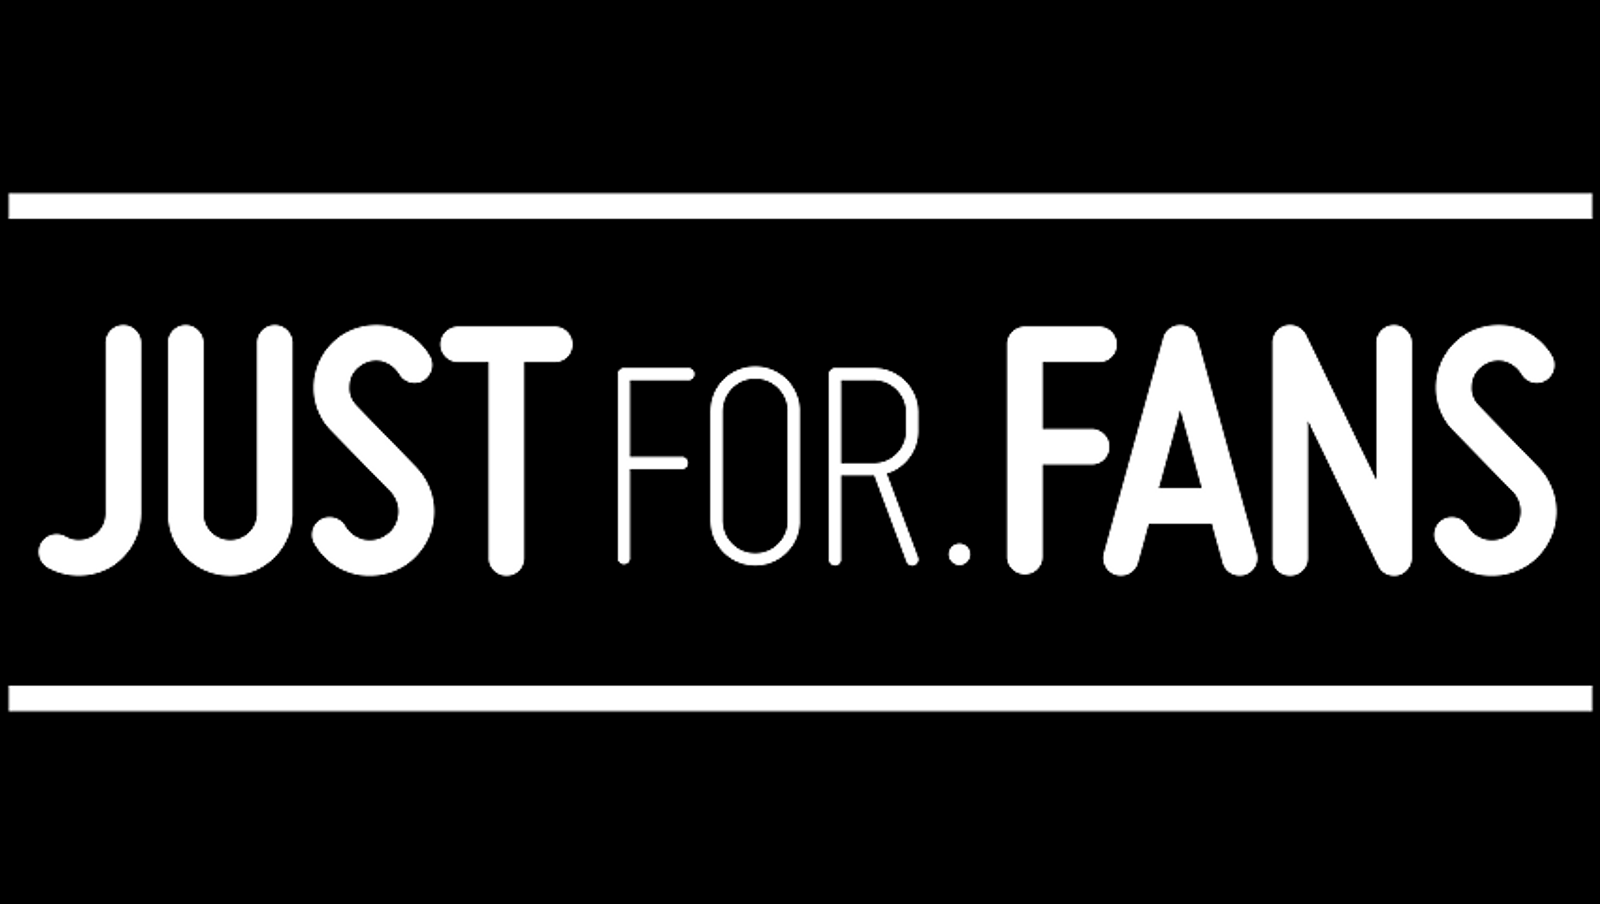 JustFor.fans Announces Aug. 9 Webinar Event